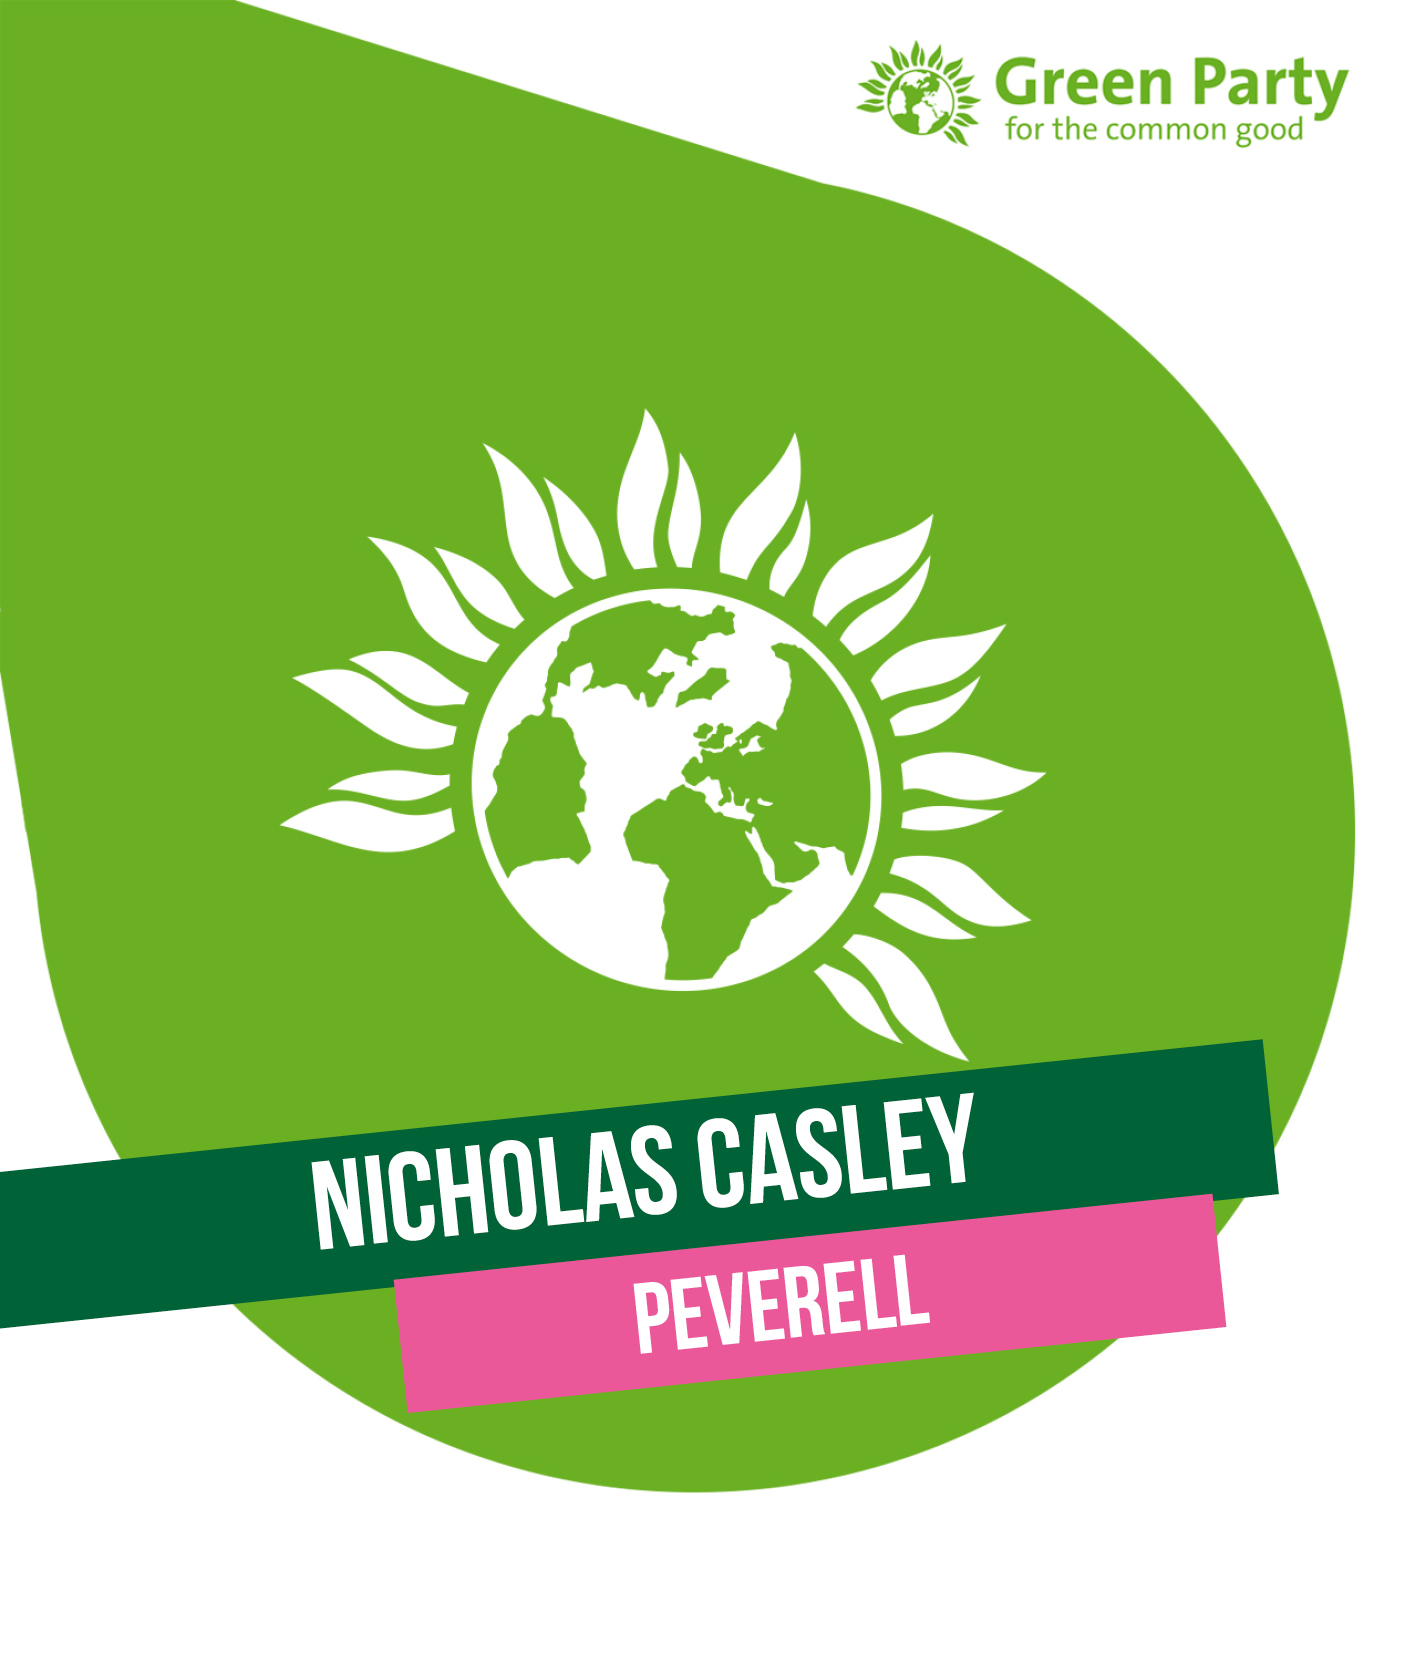 Nicholas Casley